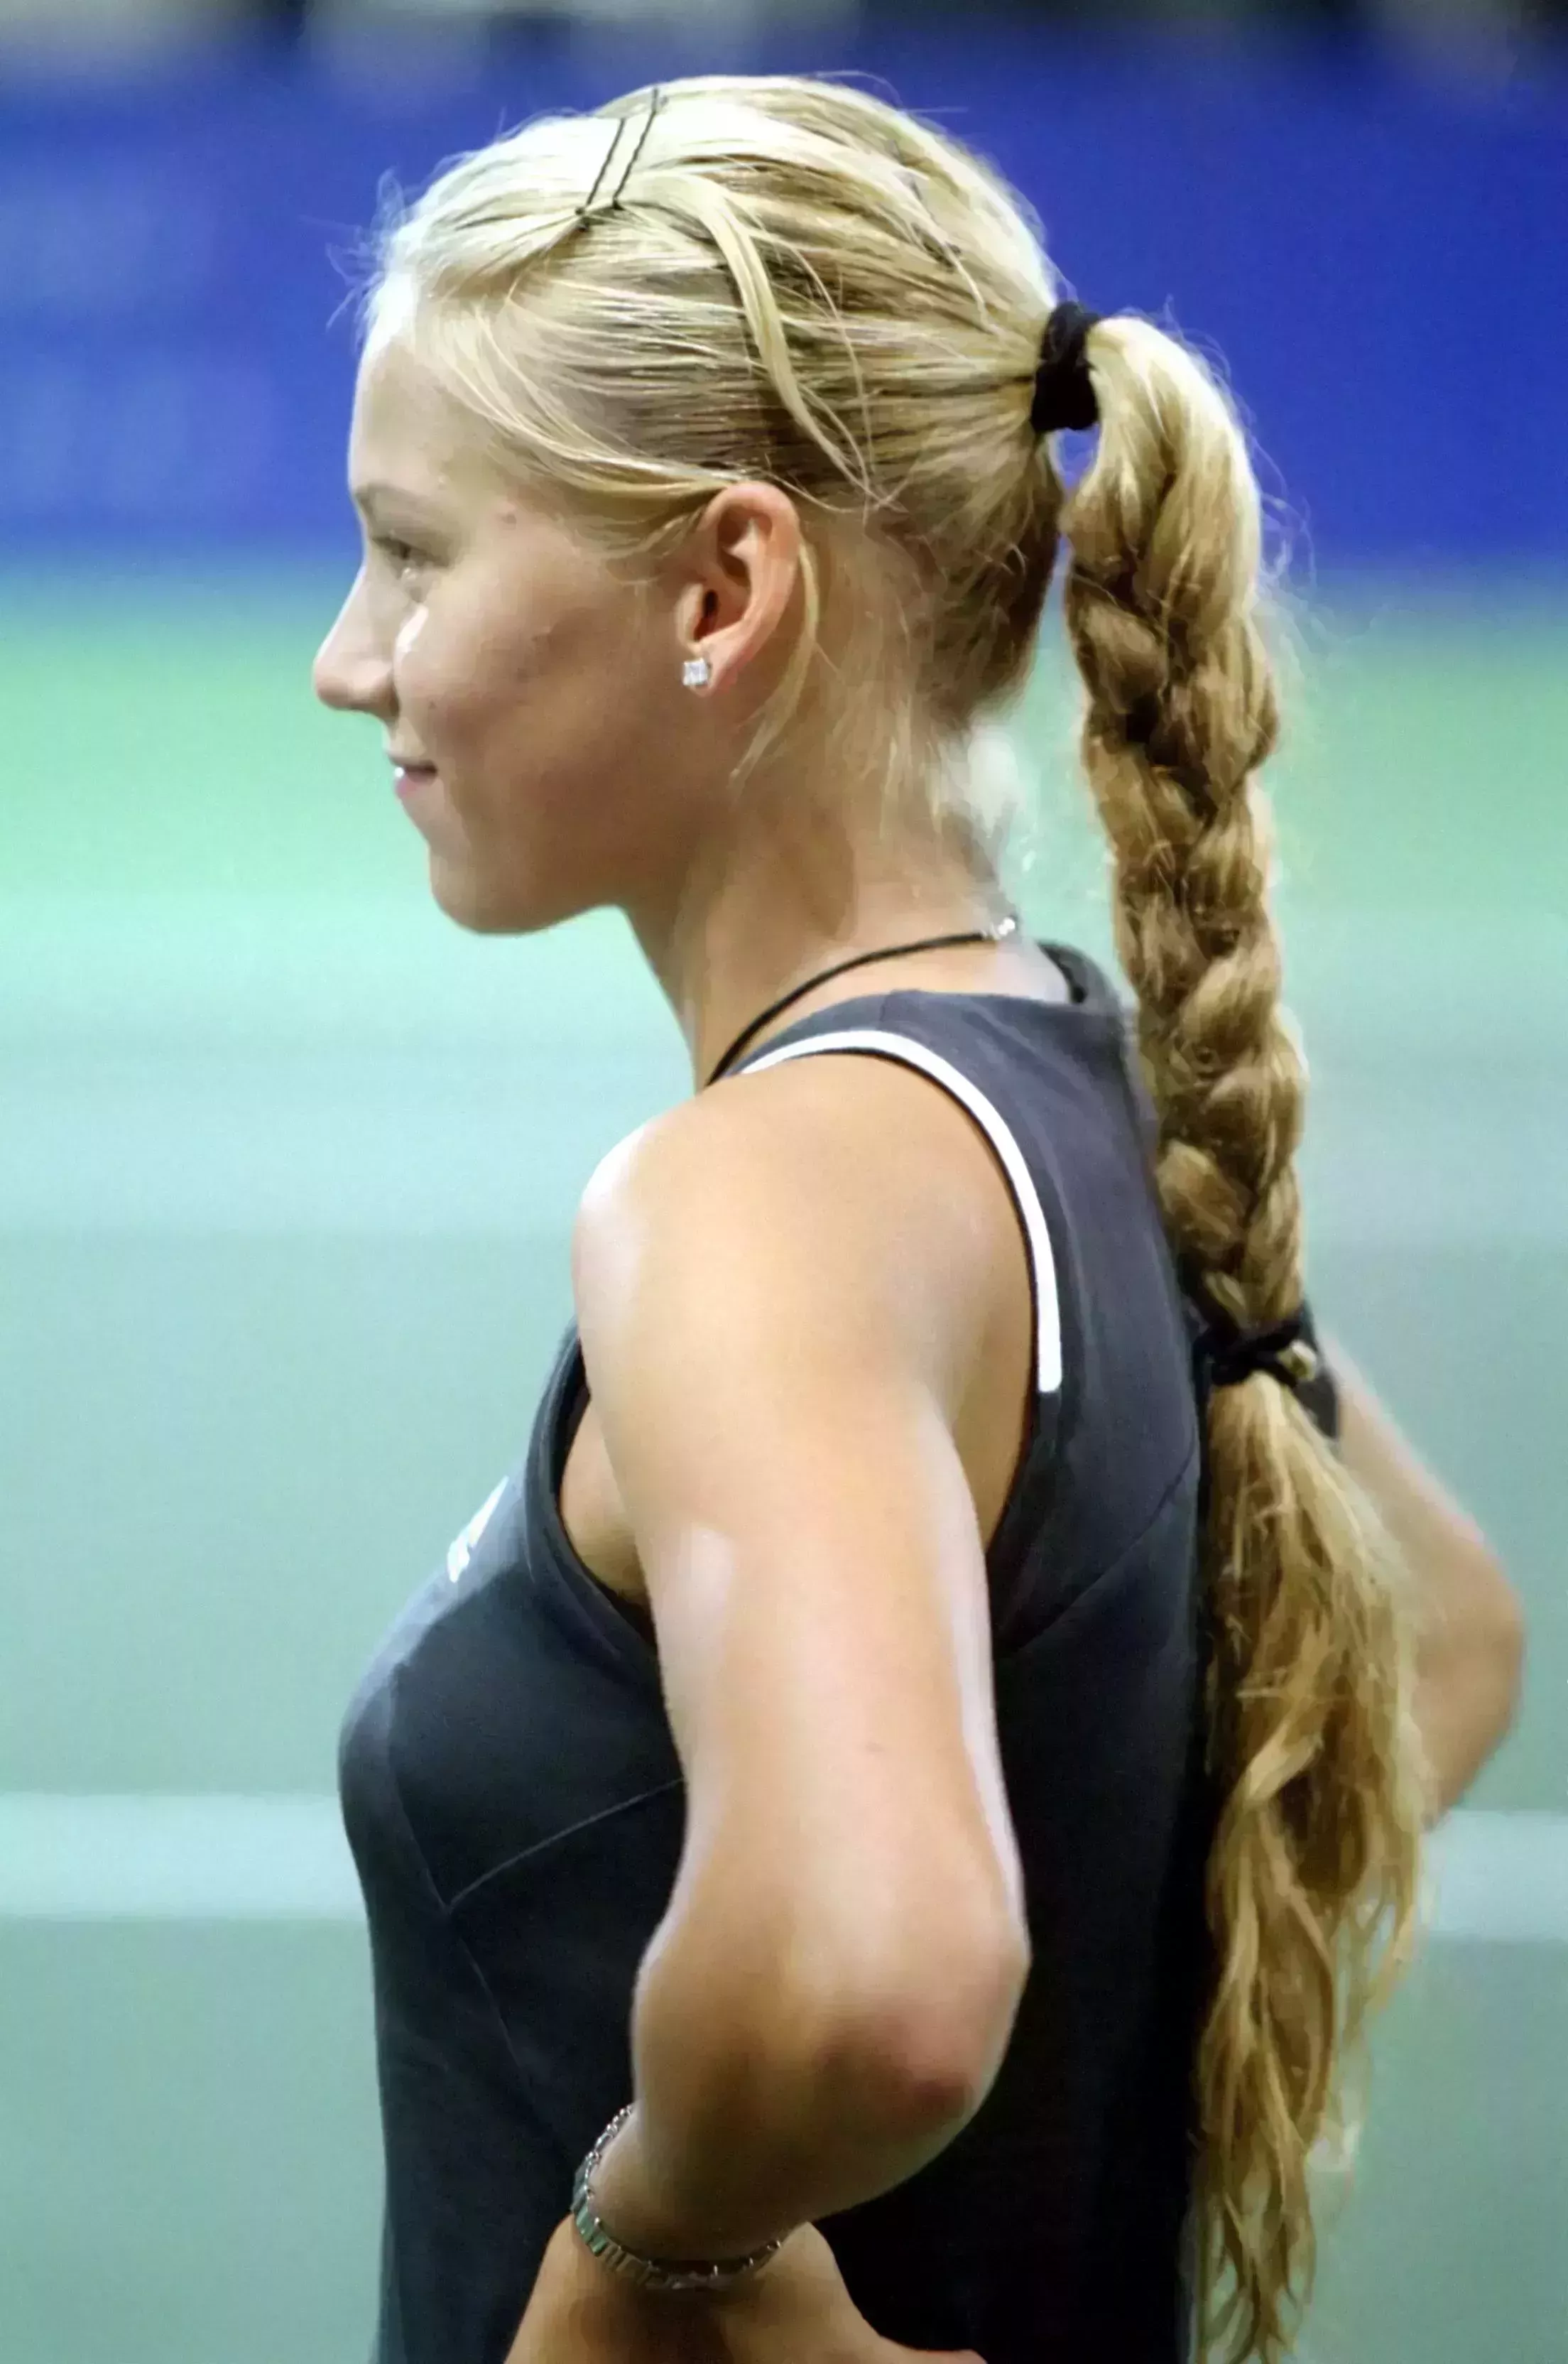 Anna Kournikova’s Tennis Court Look